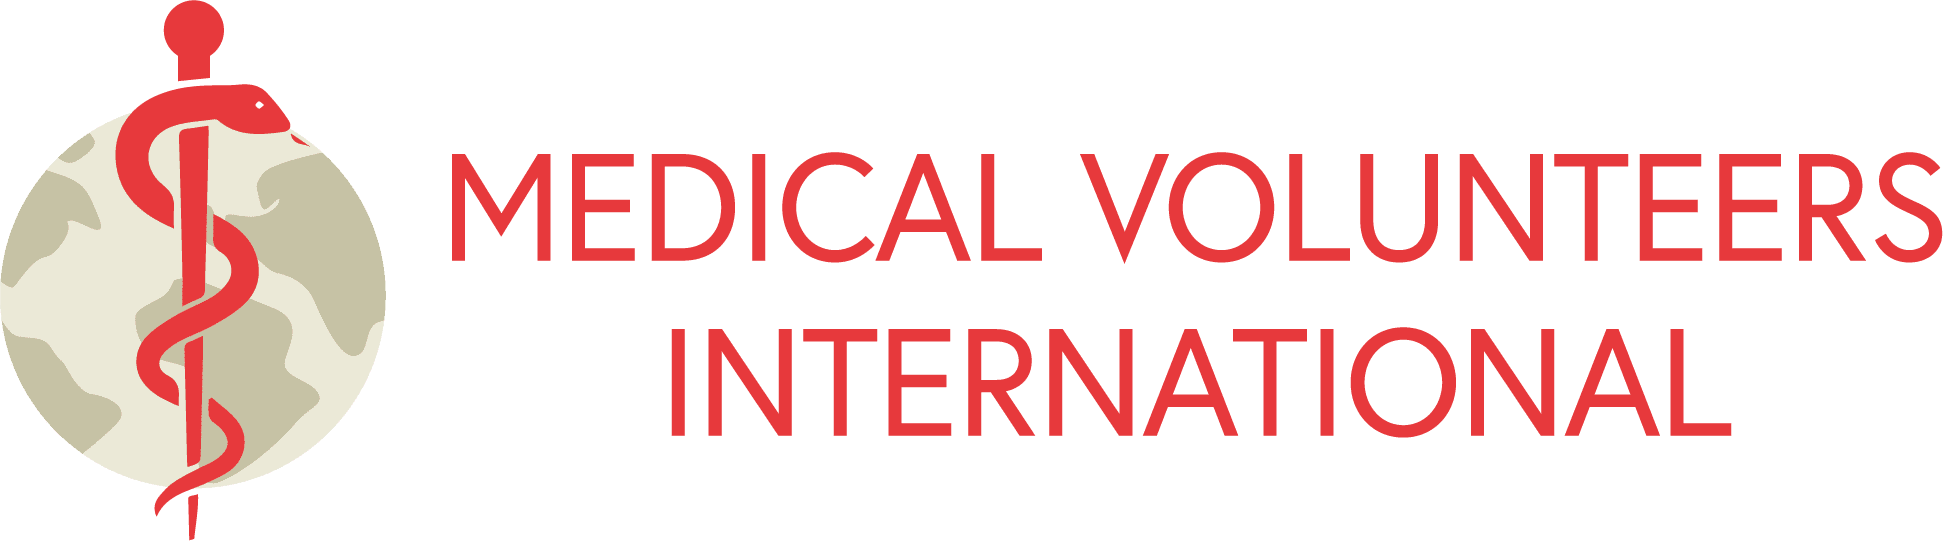 Medical Volunteers International